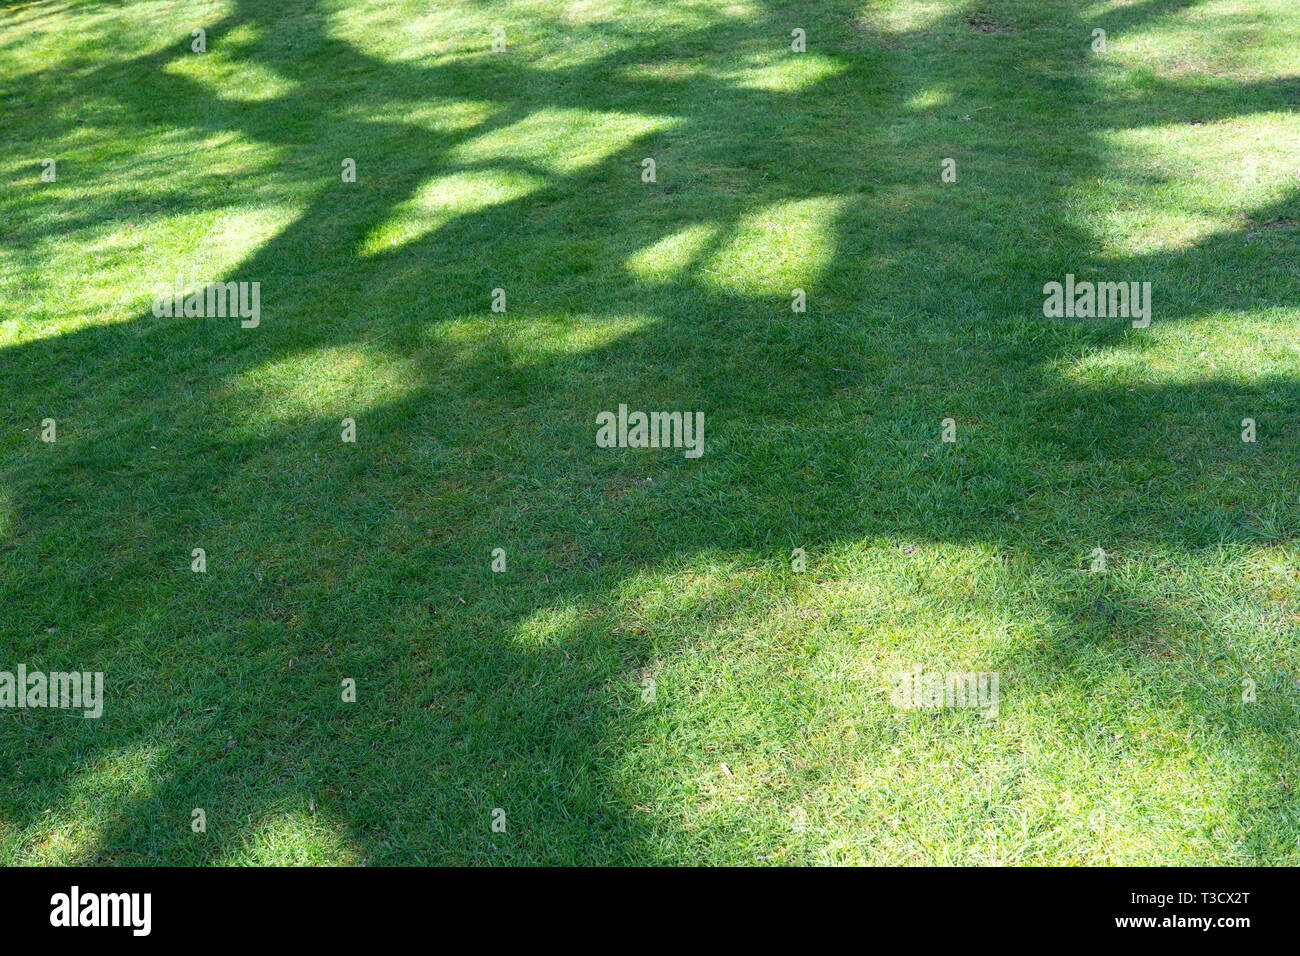 Résumé de l'ombre des arbres sur une pelouse au Royaume-Uni Banque D'Images